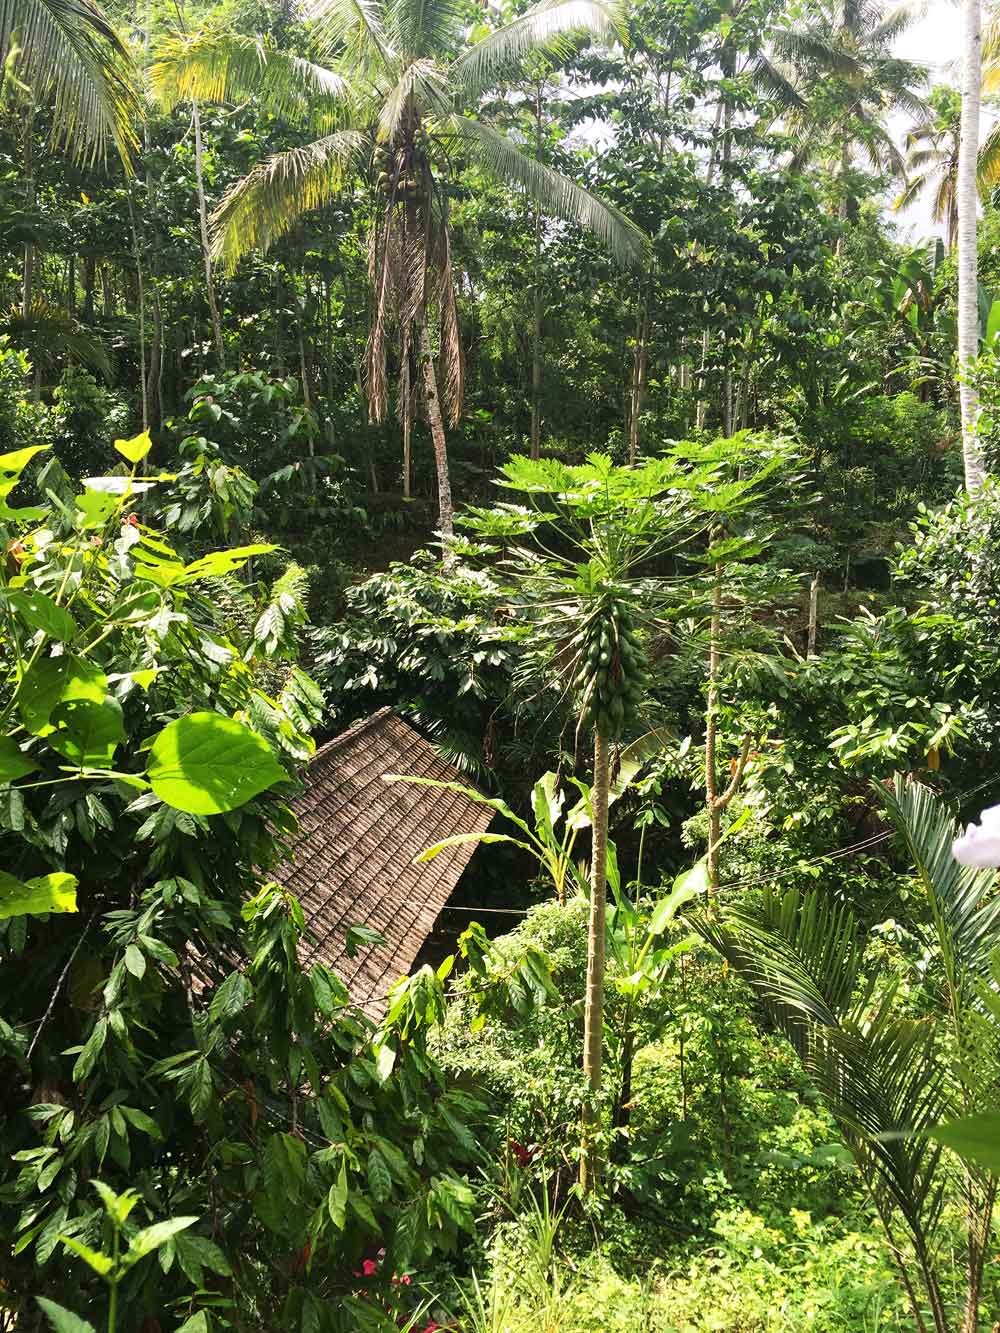 Plantaža kave obavezna je destinacija na Baliju. Iako neobičnog okusa isprve, ubrzo ćete se naviknuti na okus prave balineške kave, a na plantažama možete naučiti sve o njenoj pripremi.